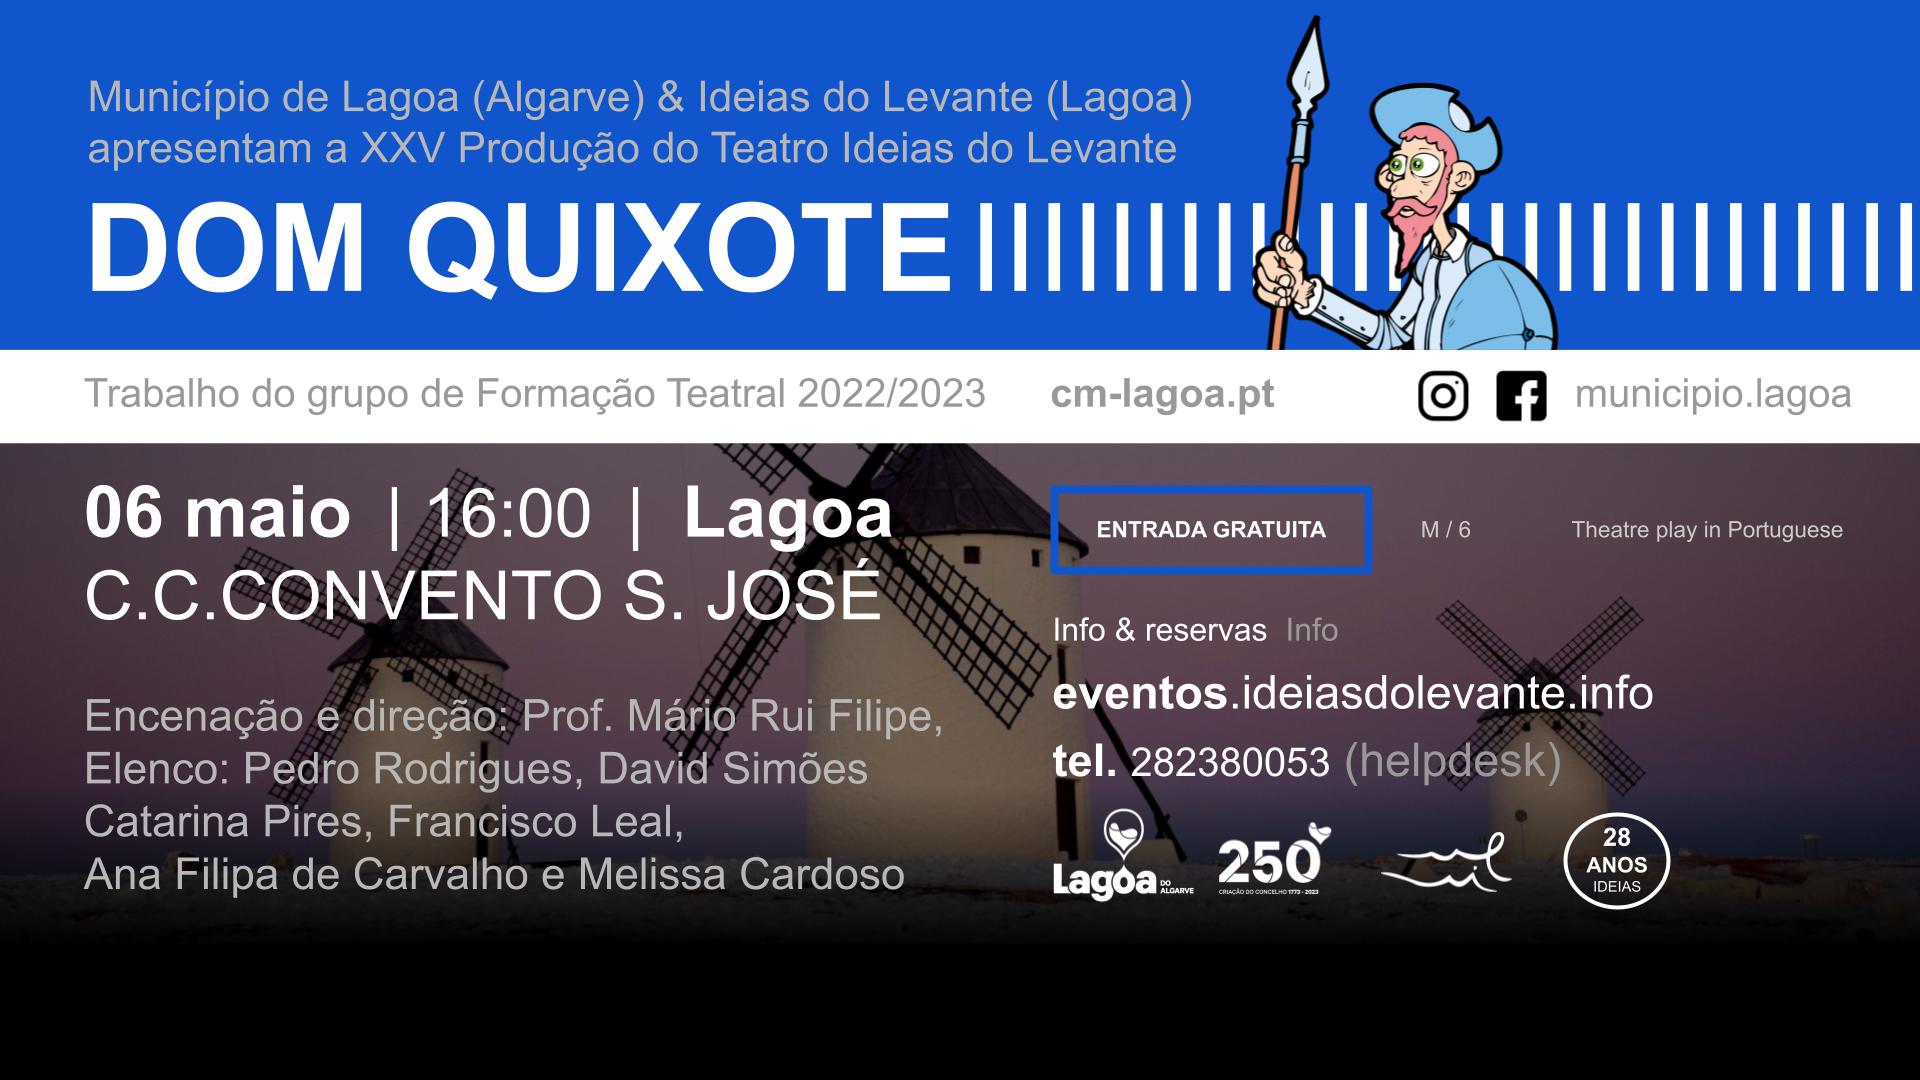 XXV Teatro do Levante | "Dom Quixote"